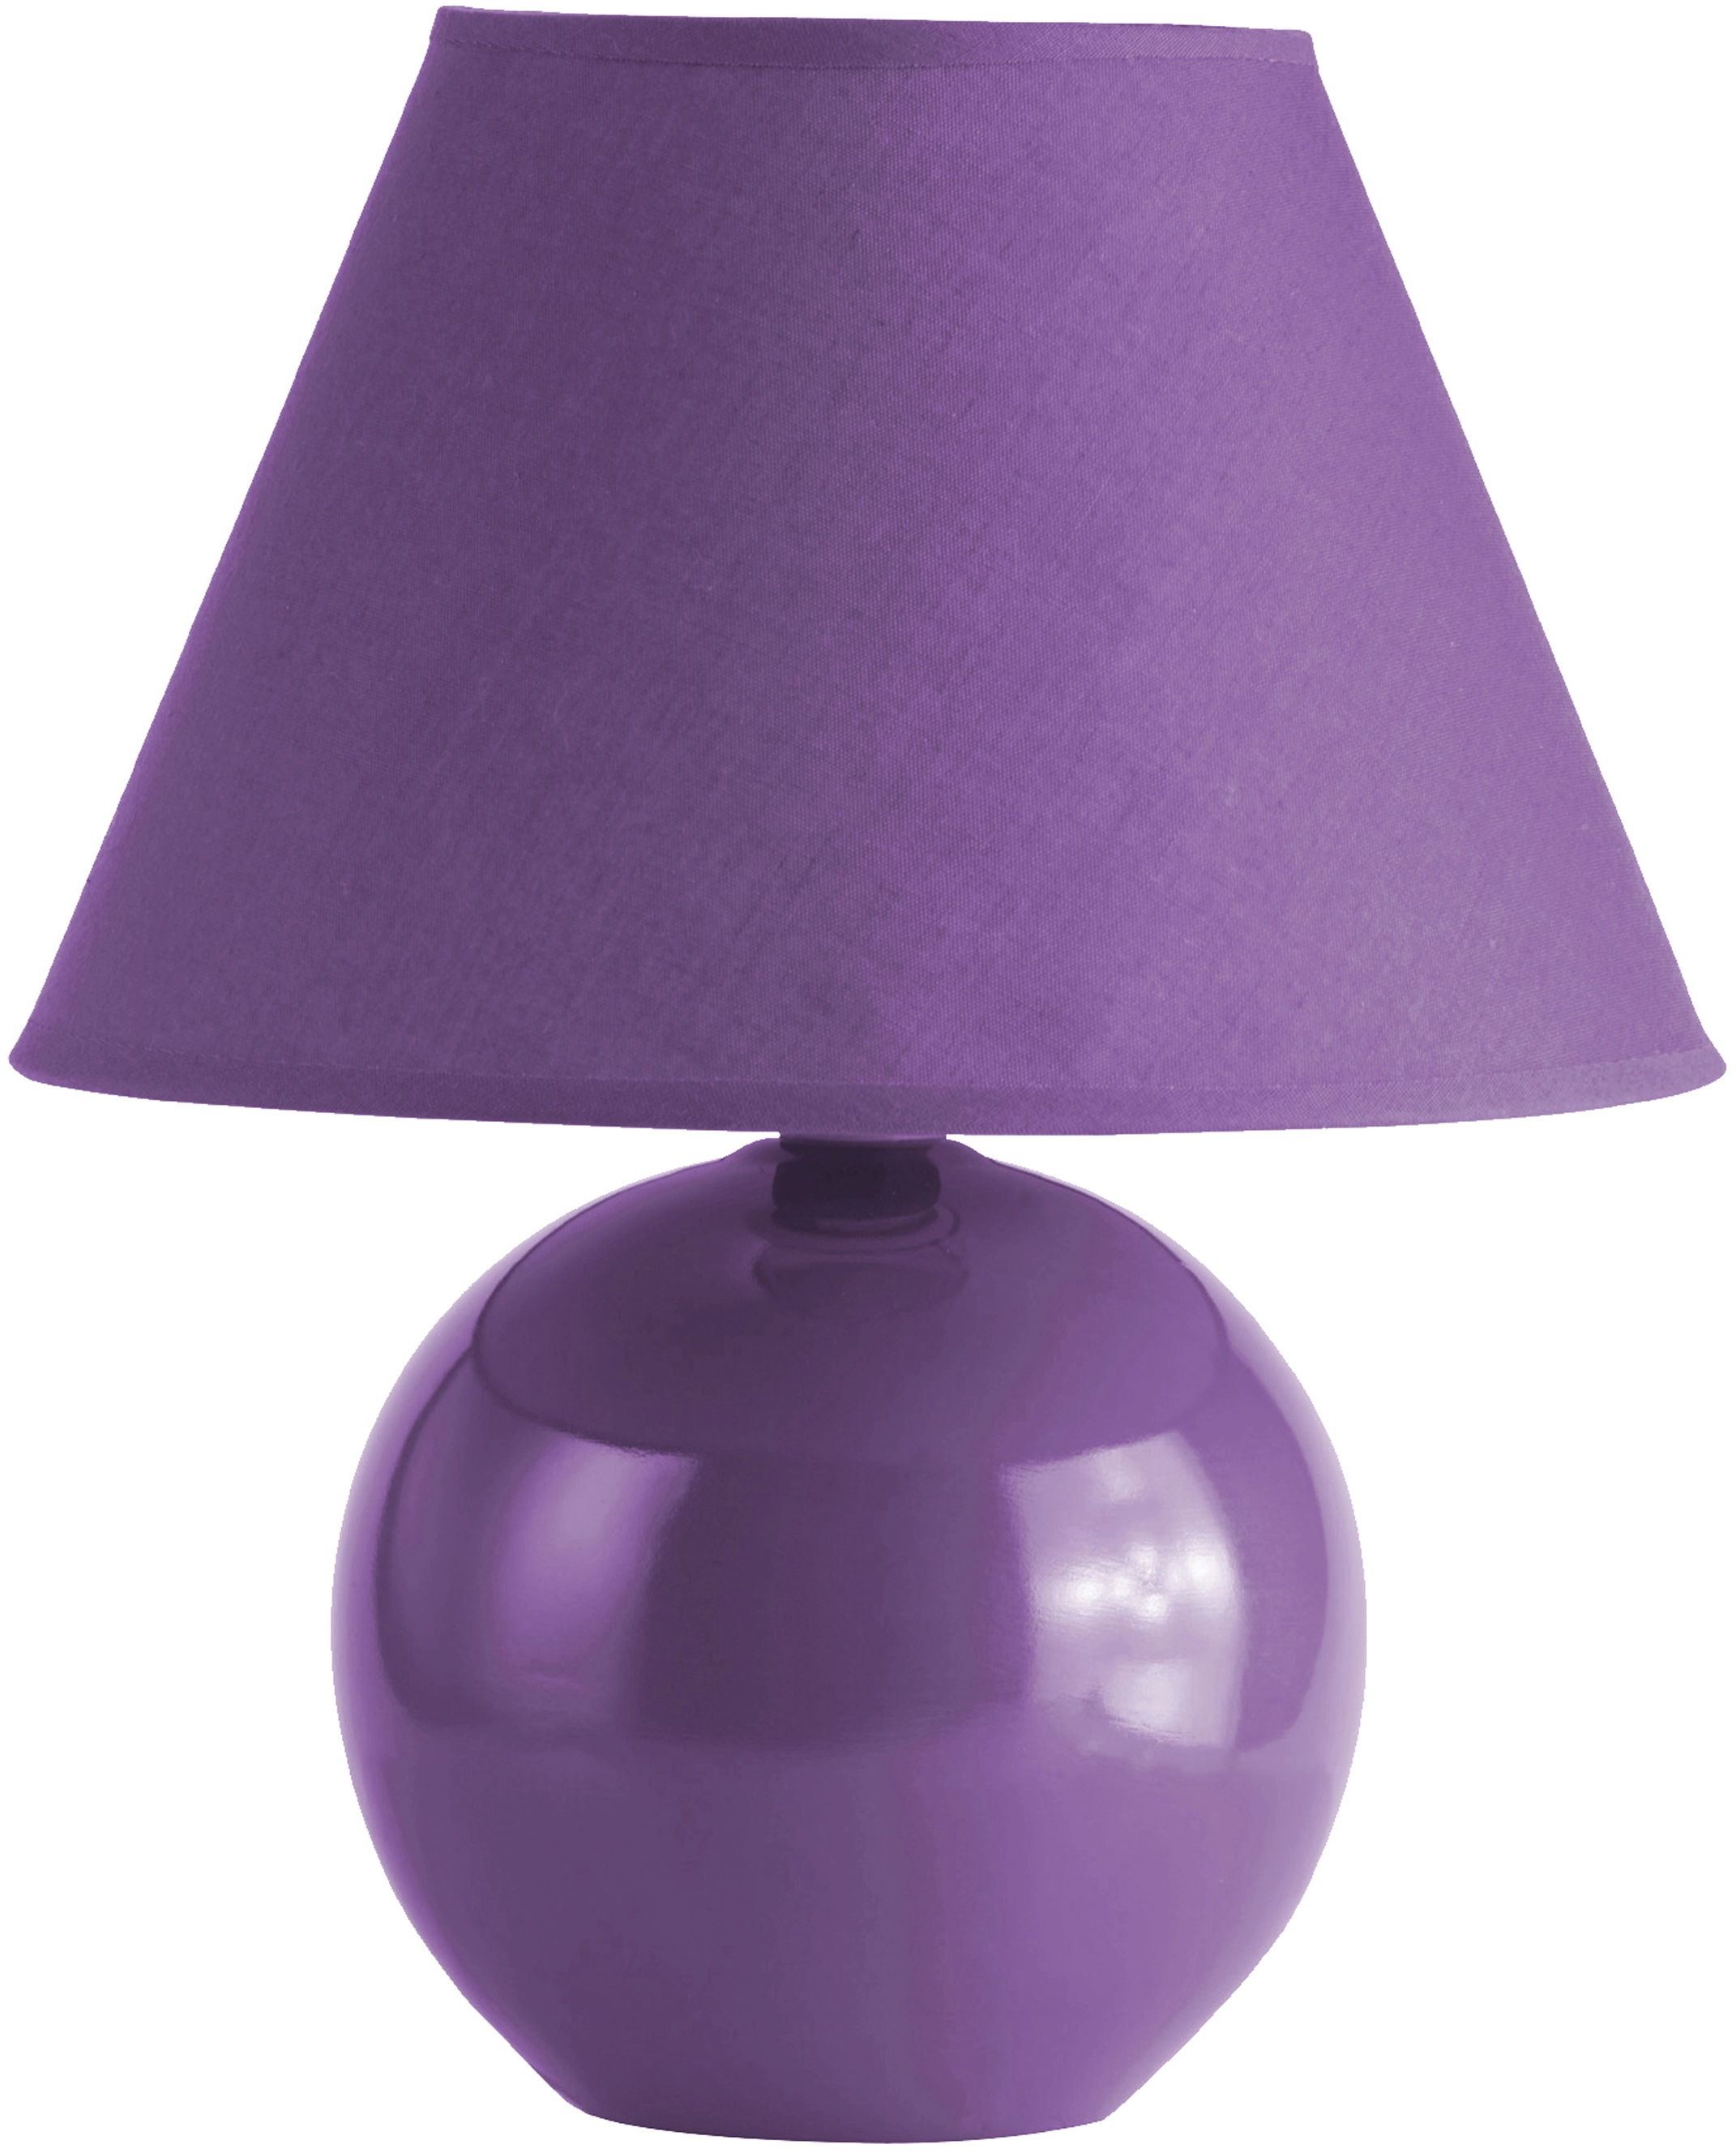 Tischleuchte Keramik Violett | Tischlampen